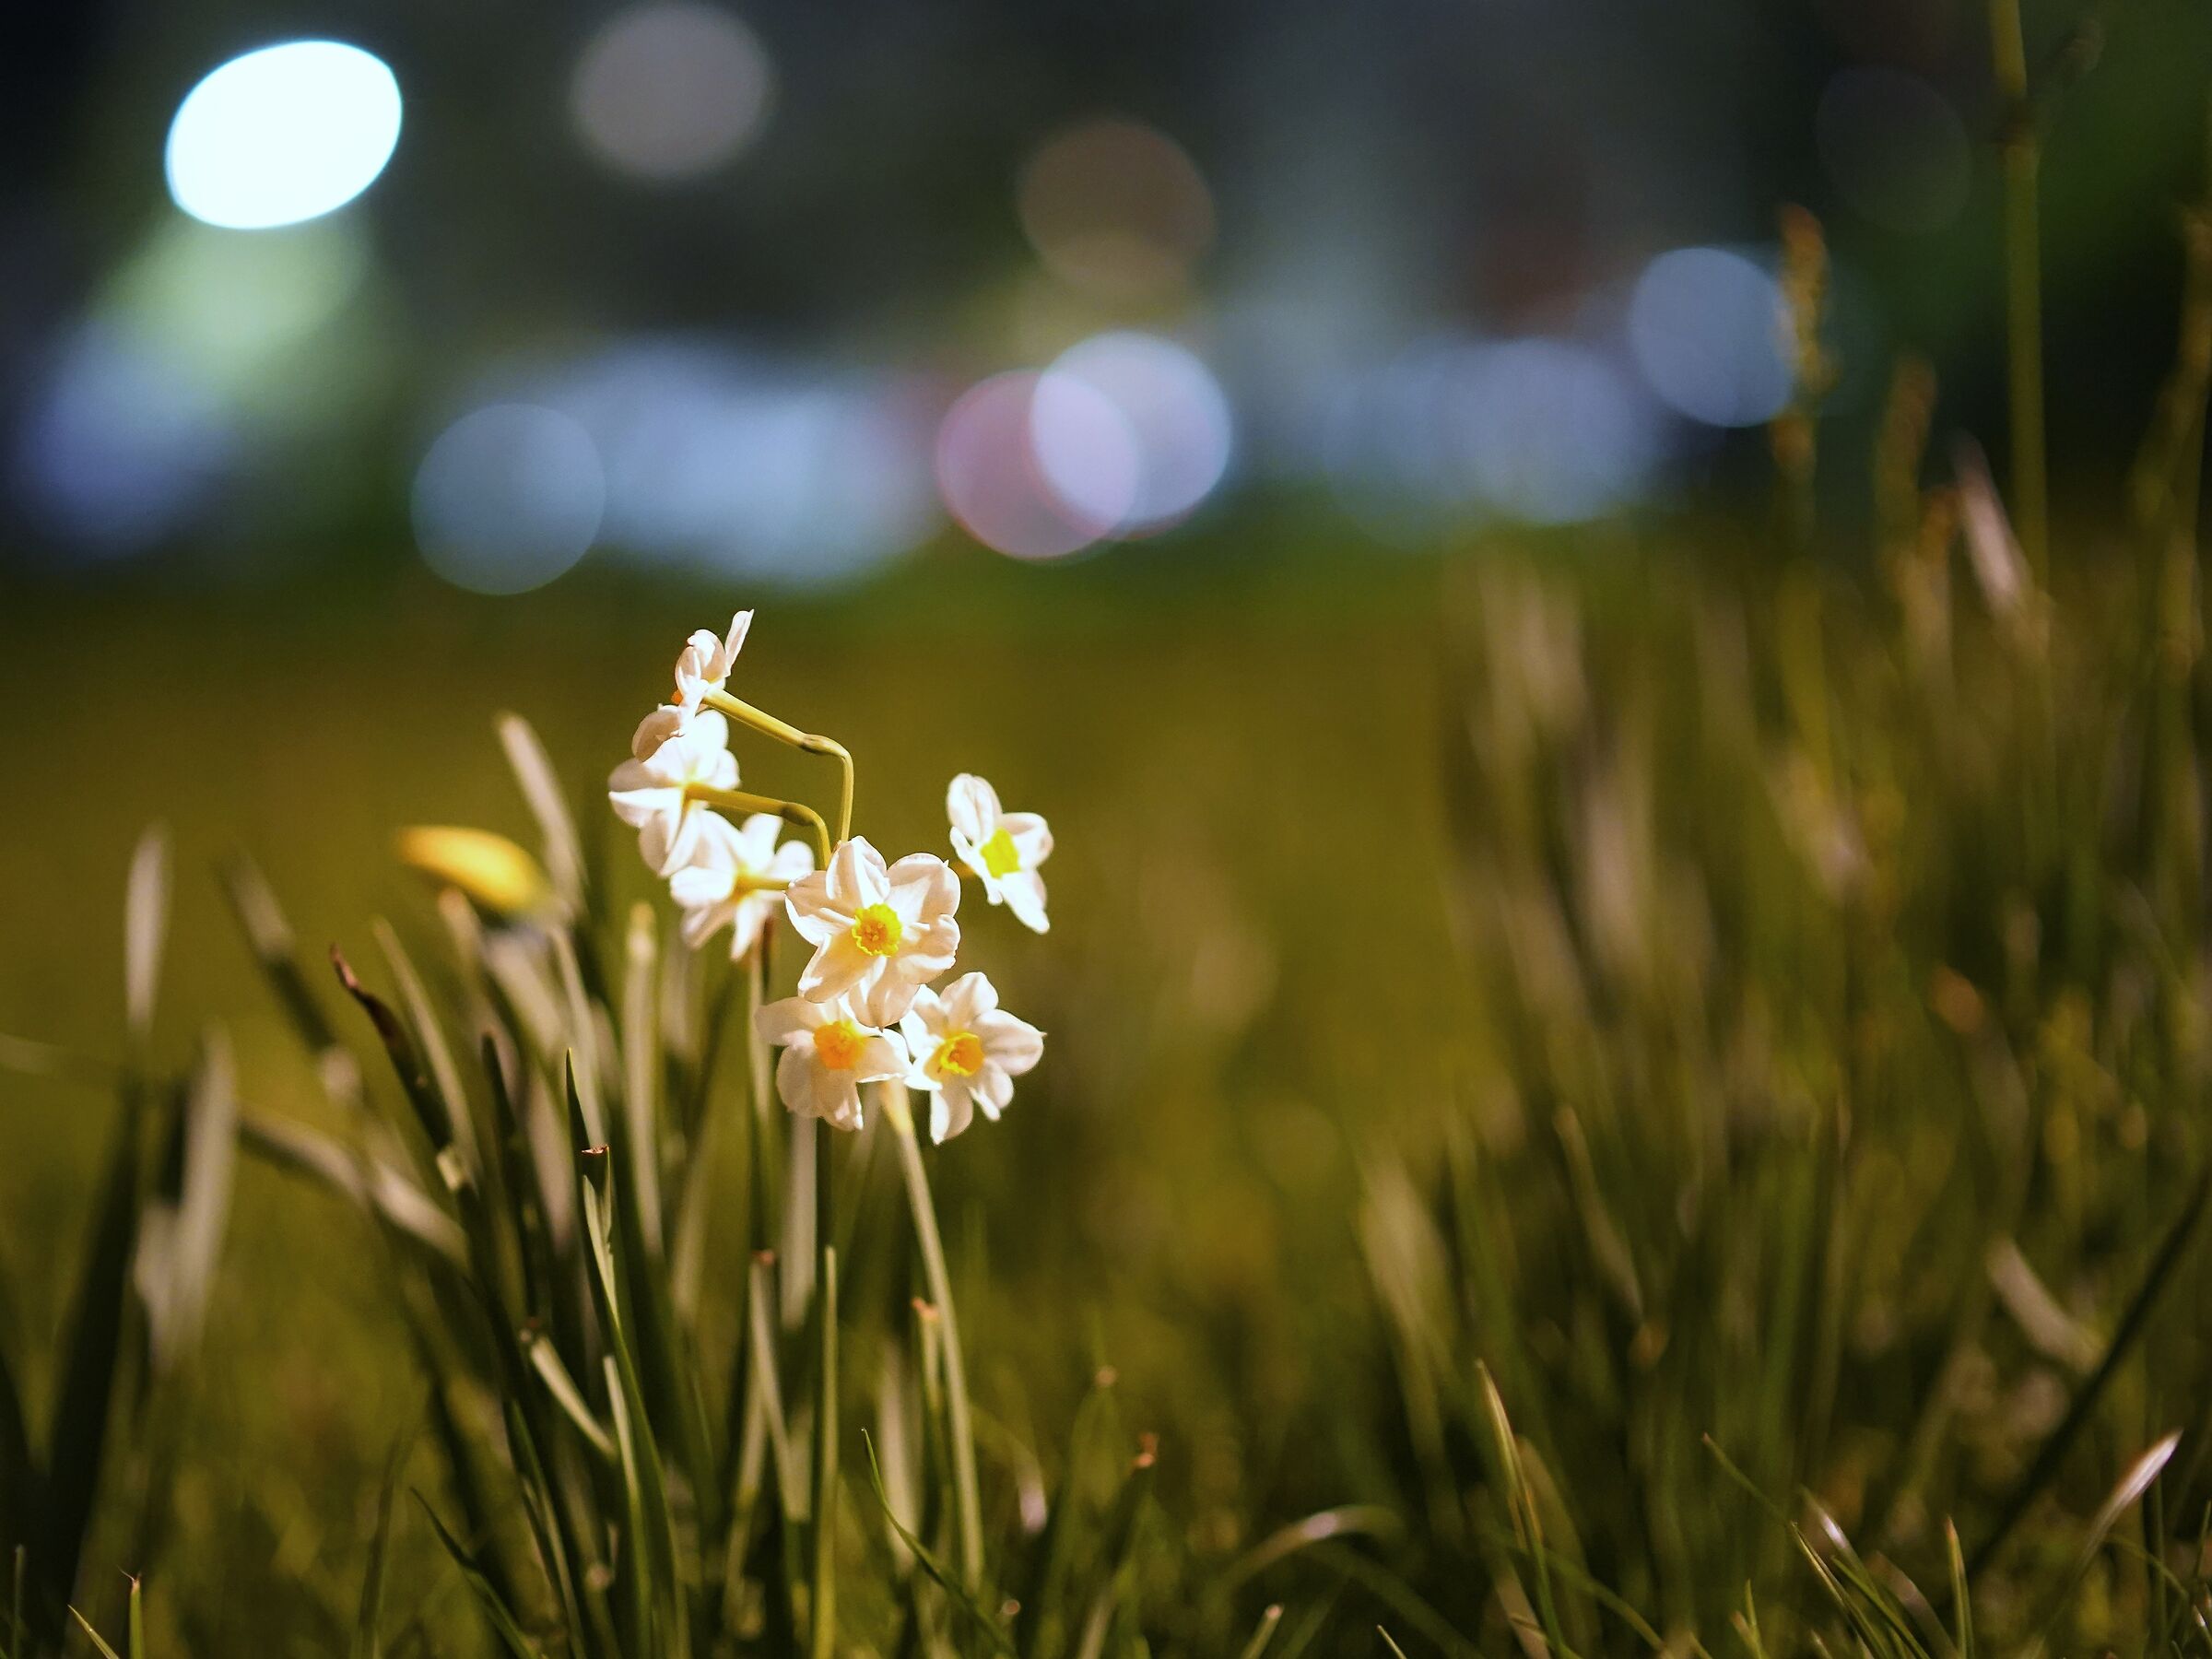 Daffodil by night...